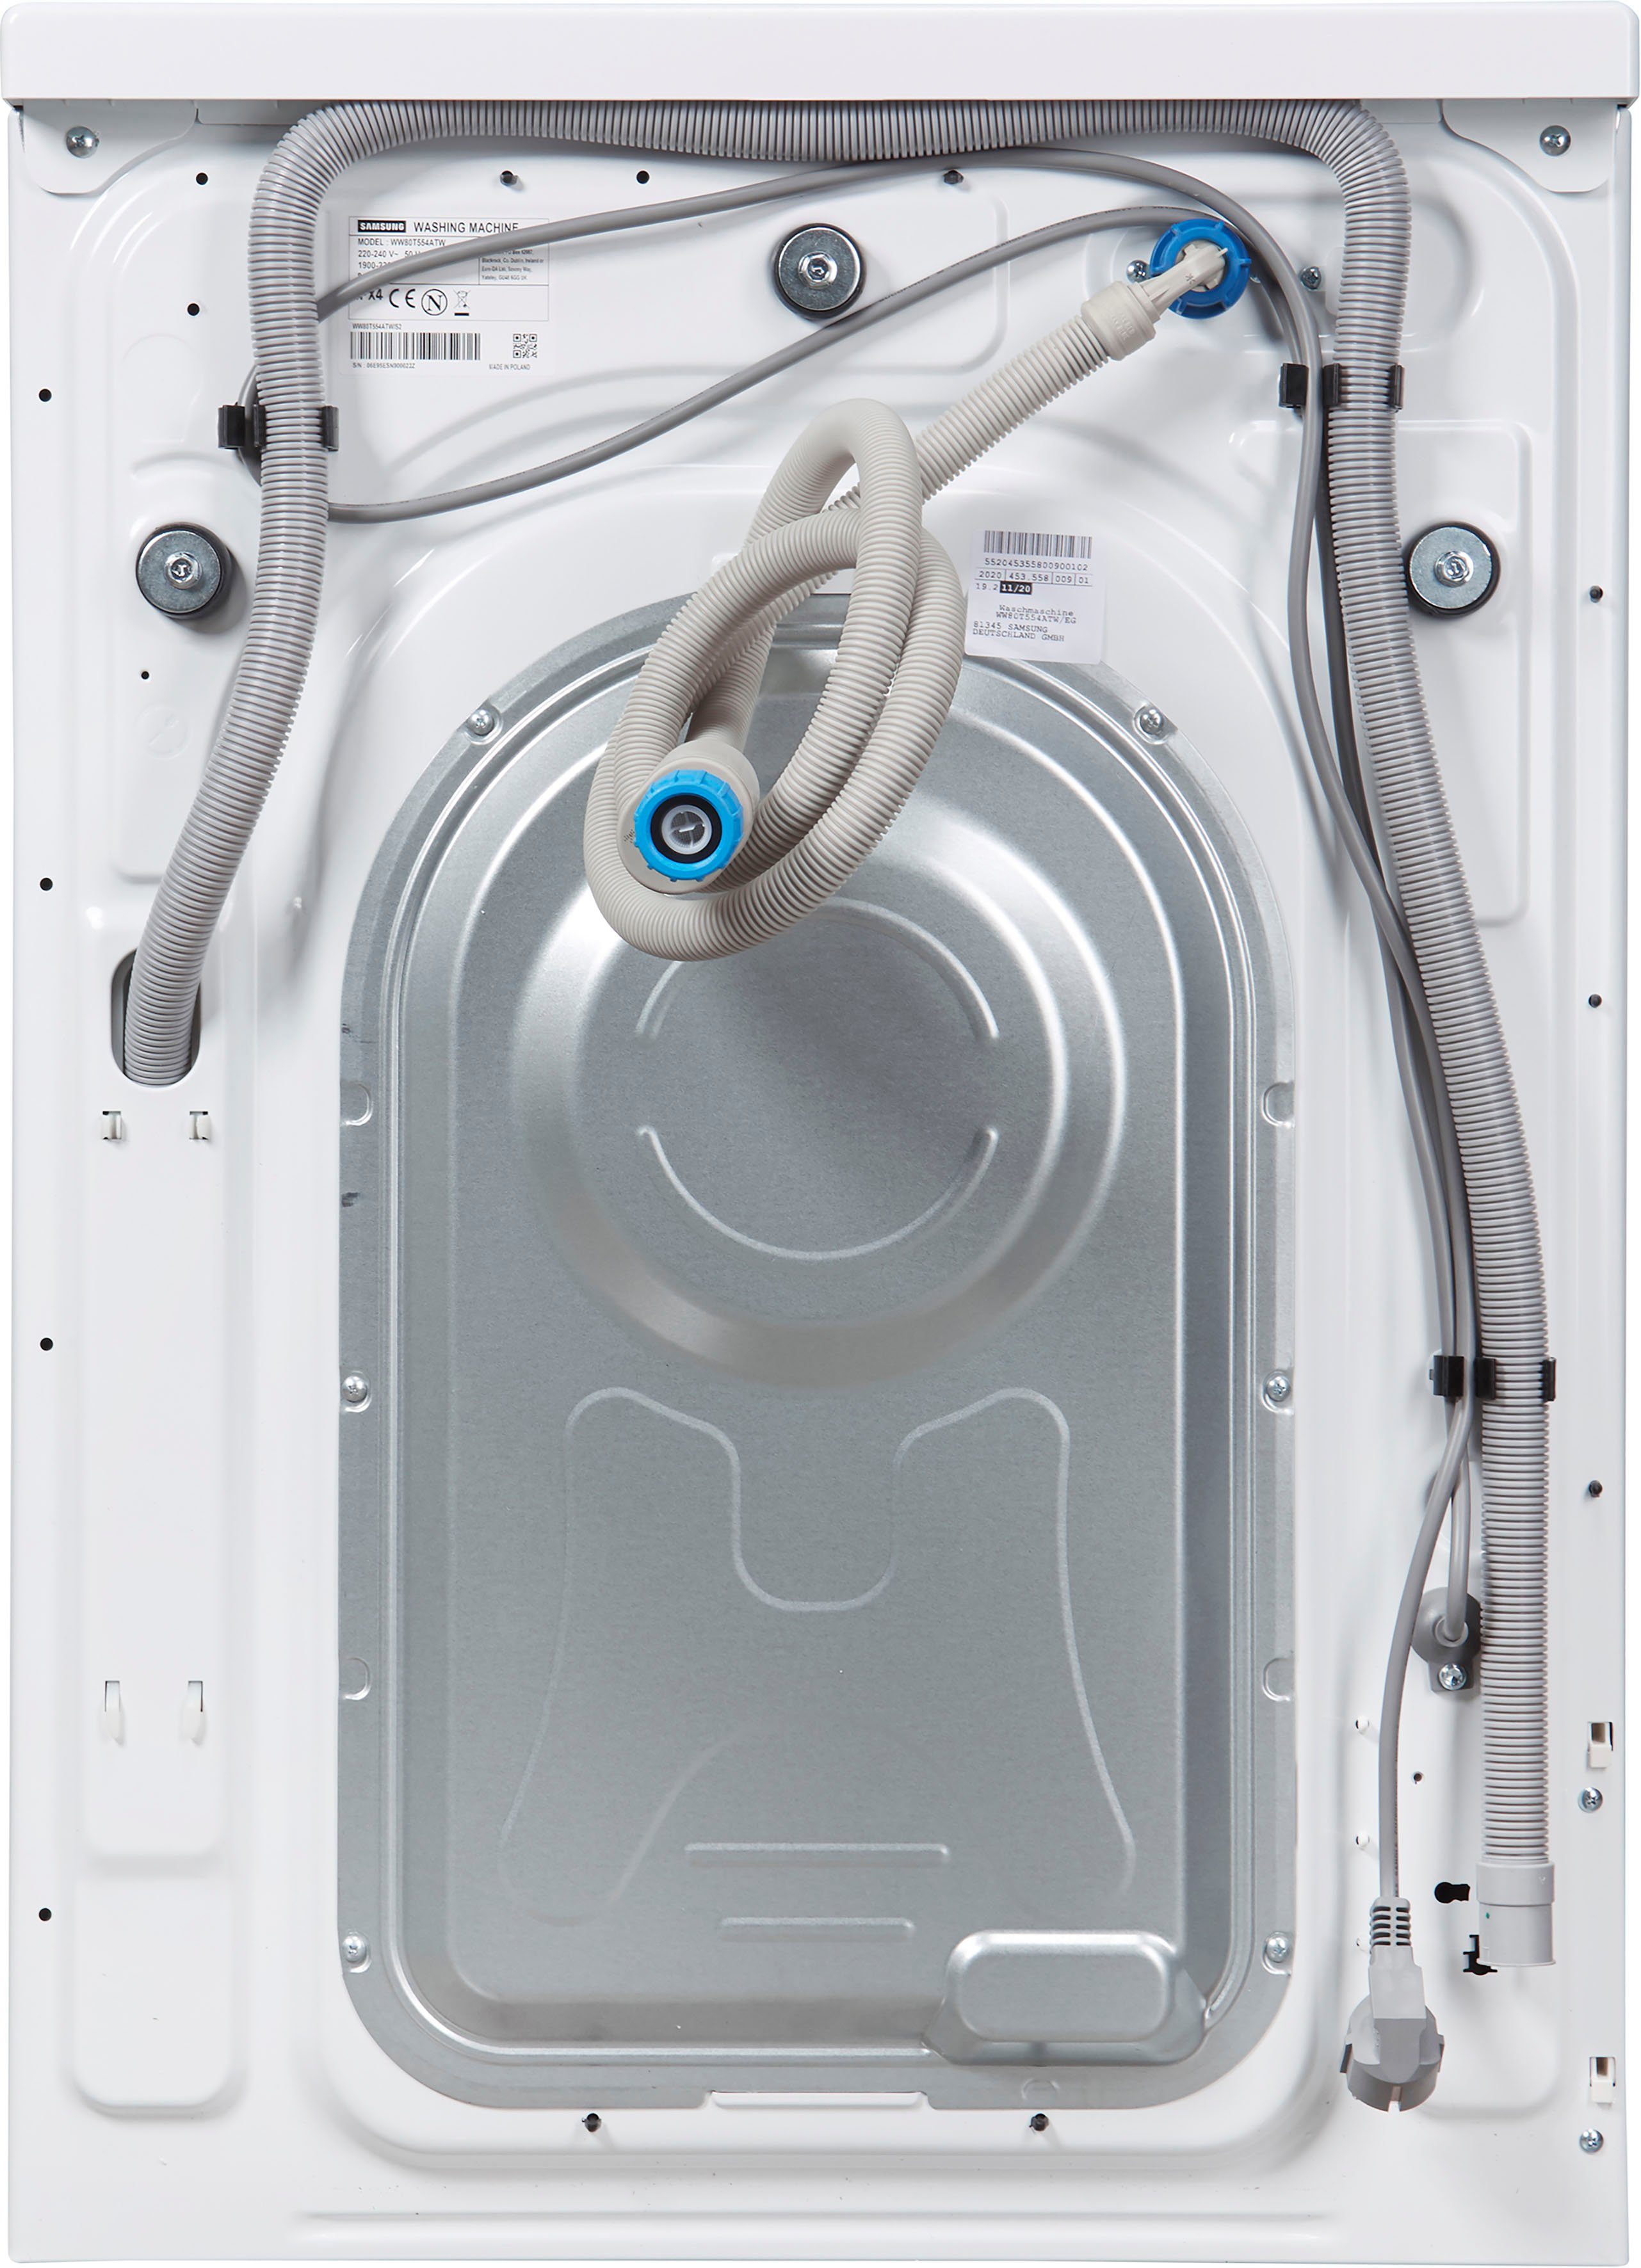 Samsung kg, 8 1400 WW80T554ATW, U/min, AddWash™ WW5500T Waschmaschine